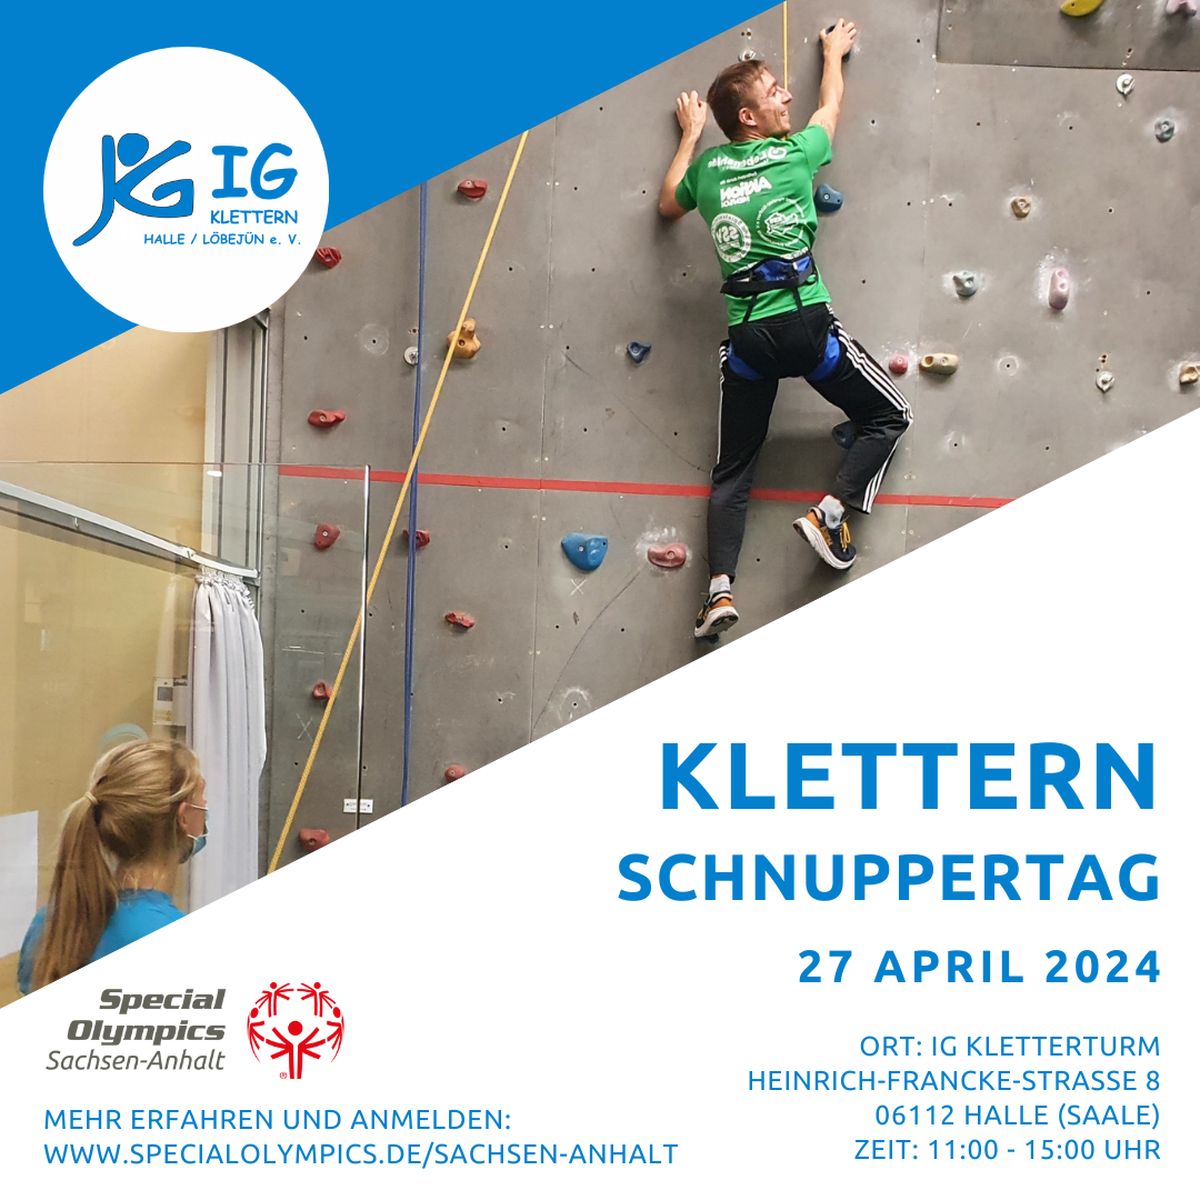 Einladung zu einem Kletter-Schnuppertag der IG Klettern Halle/Löbejün e.V. am 27.04.2024